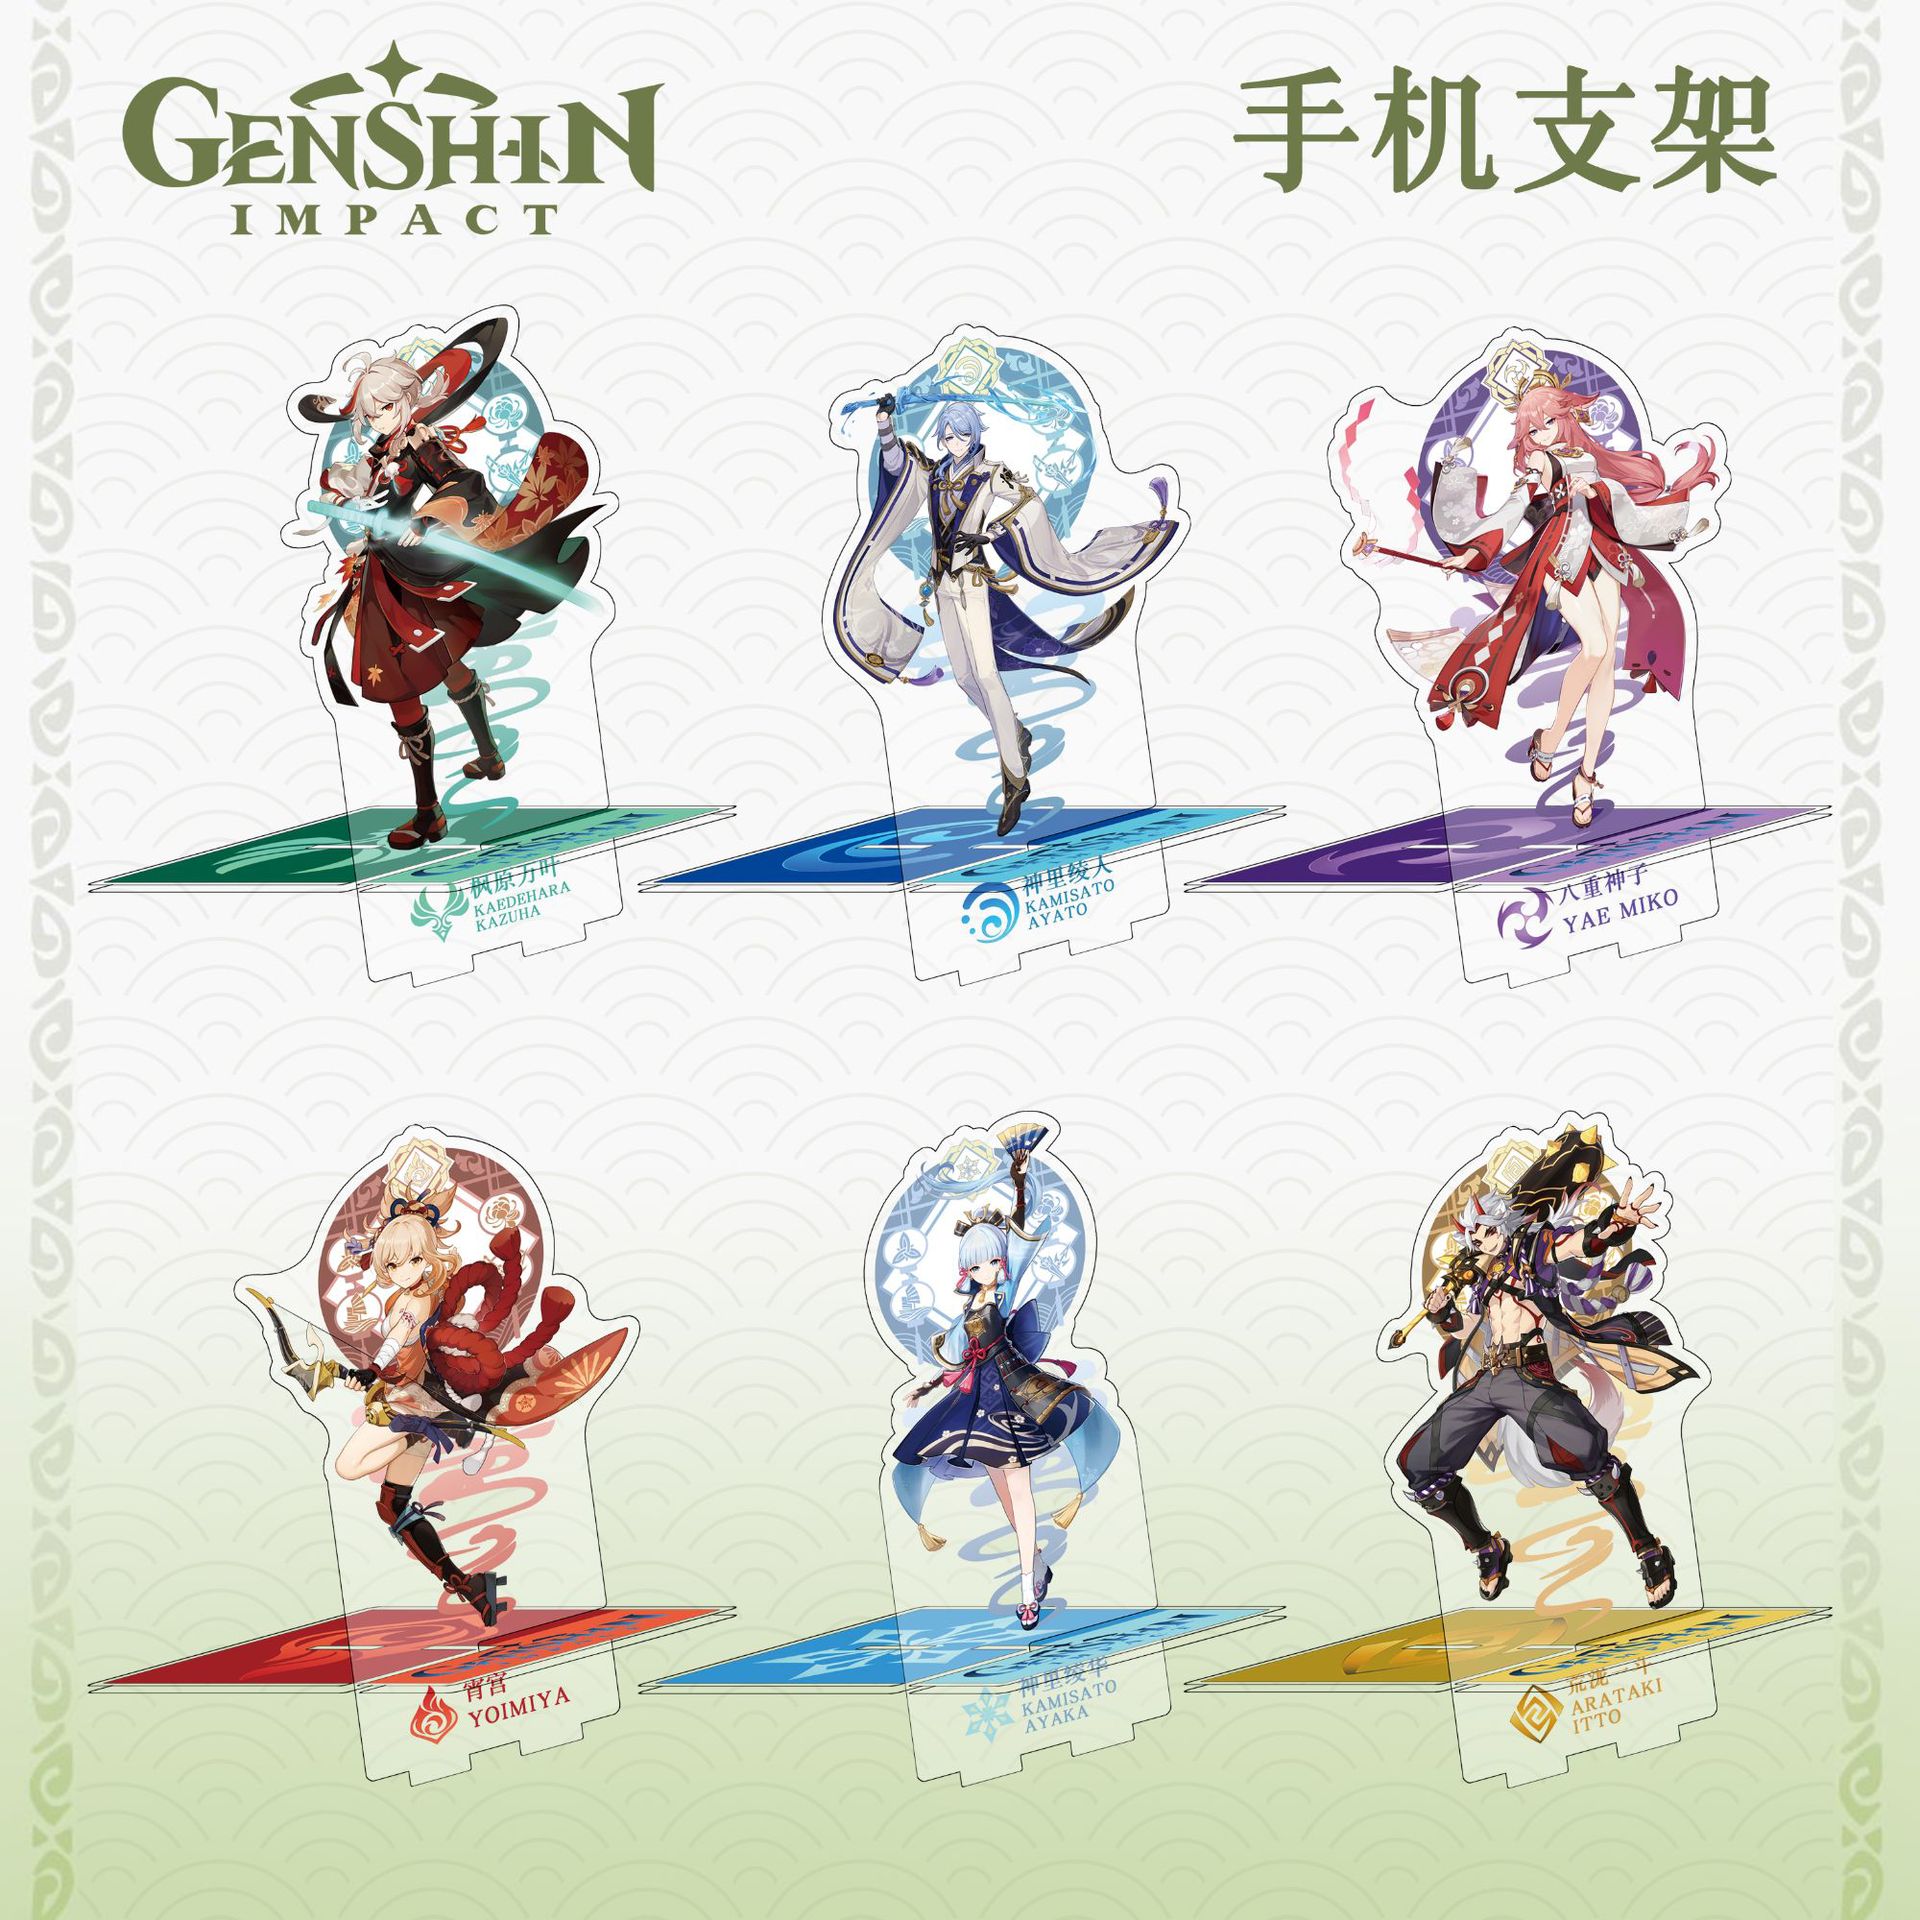 Genshin Impact anime Mobile phone holder 20cm